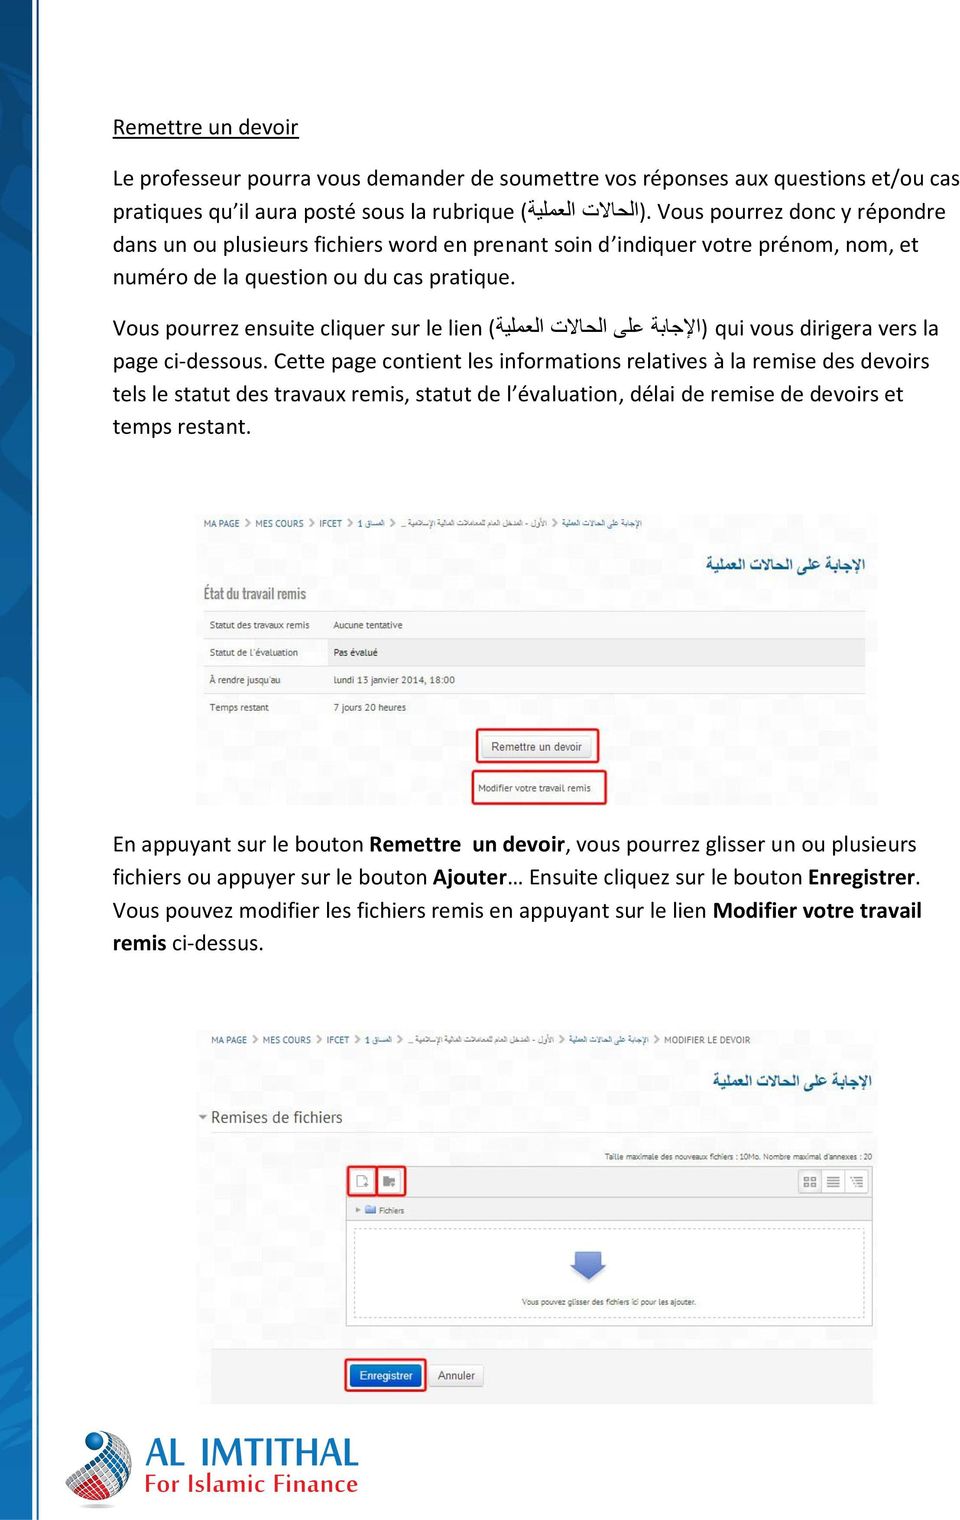 Vous pourrez ensuite cliquer sur le lien ( على الحاالت العملية (اإلجابة qui vous dirigera vers la page ci-dessous.